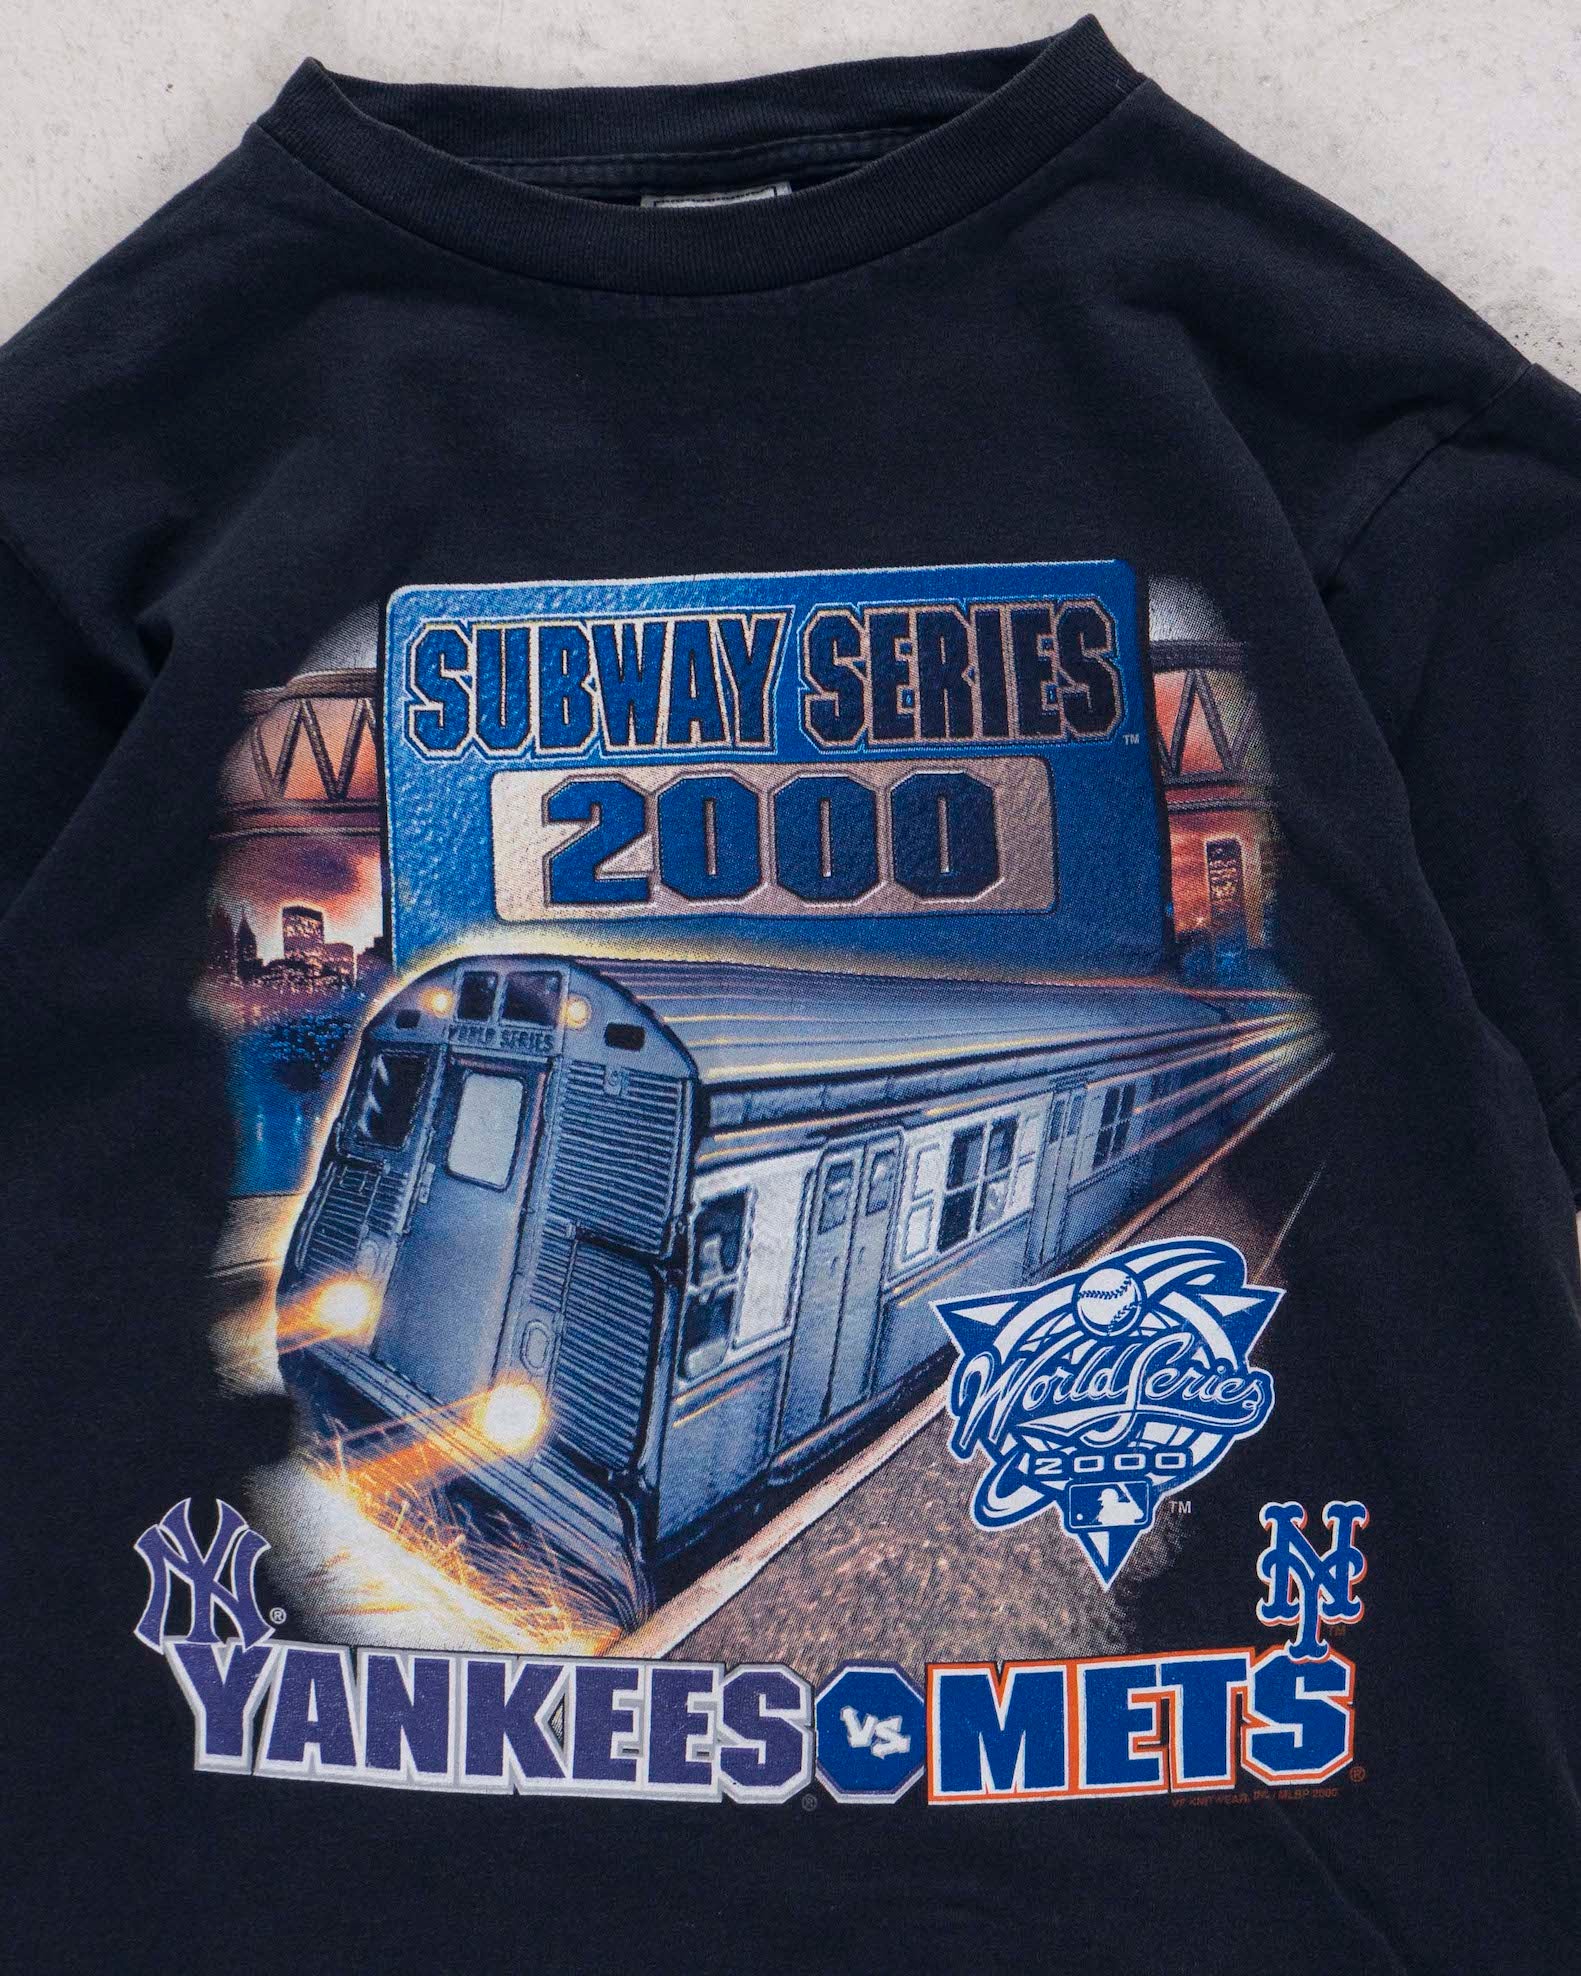 Subway Series 2000 Yankees Vs Mets T-shirt